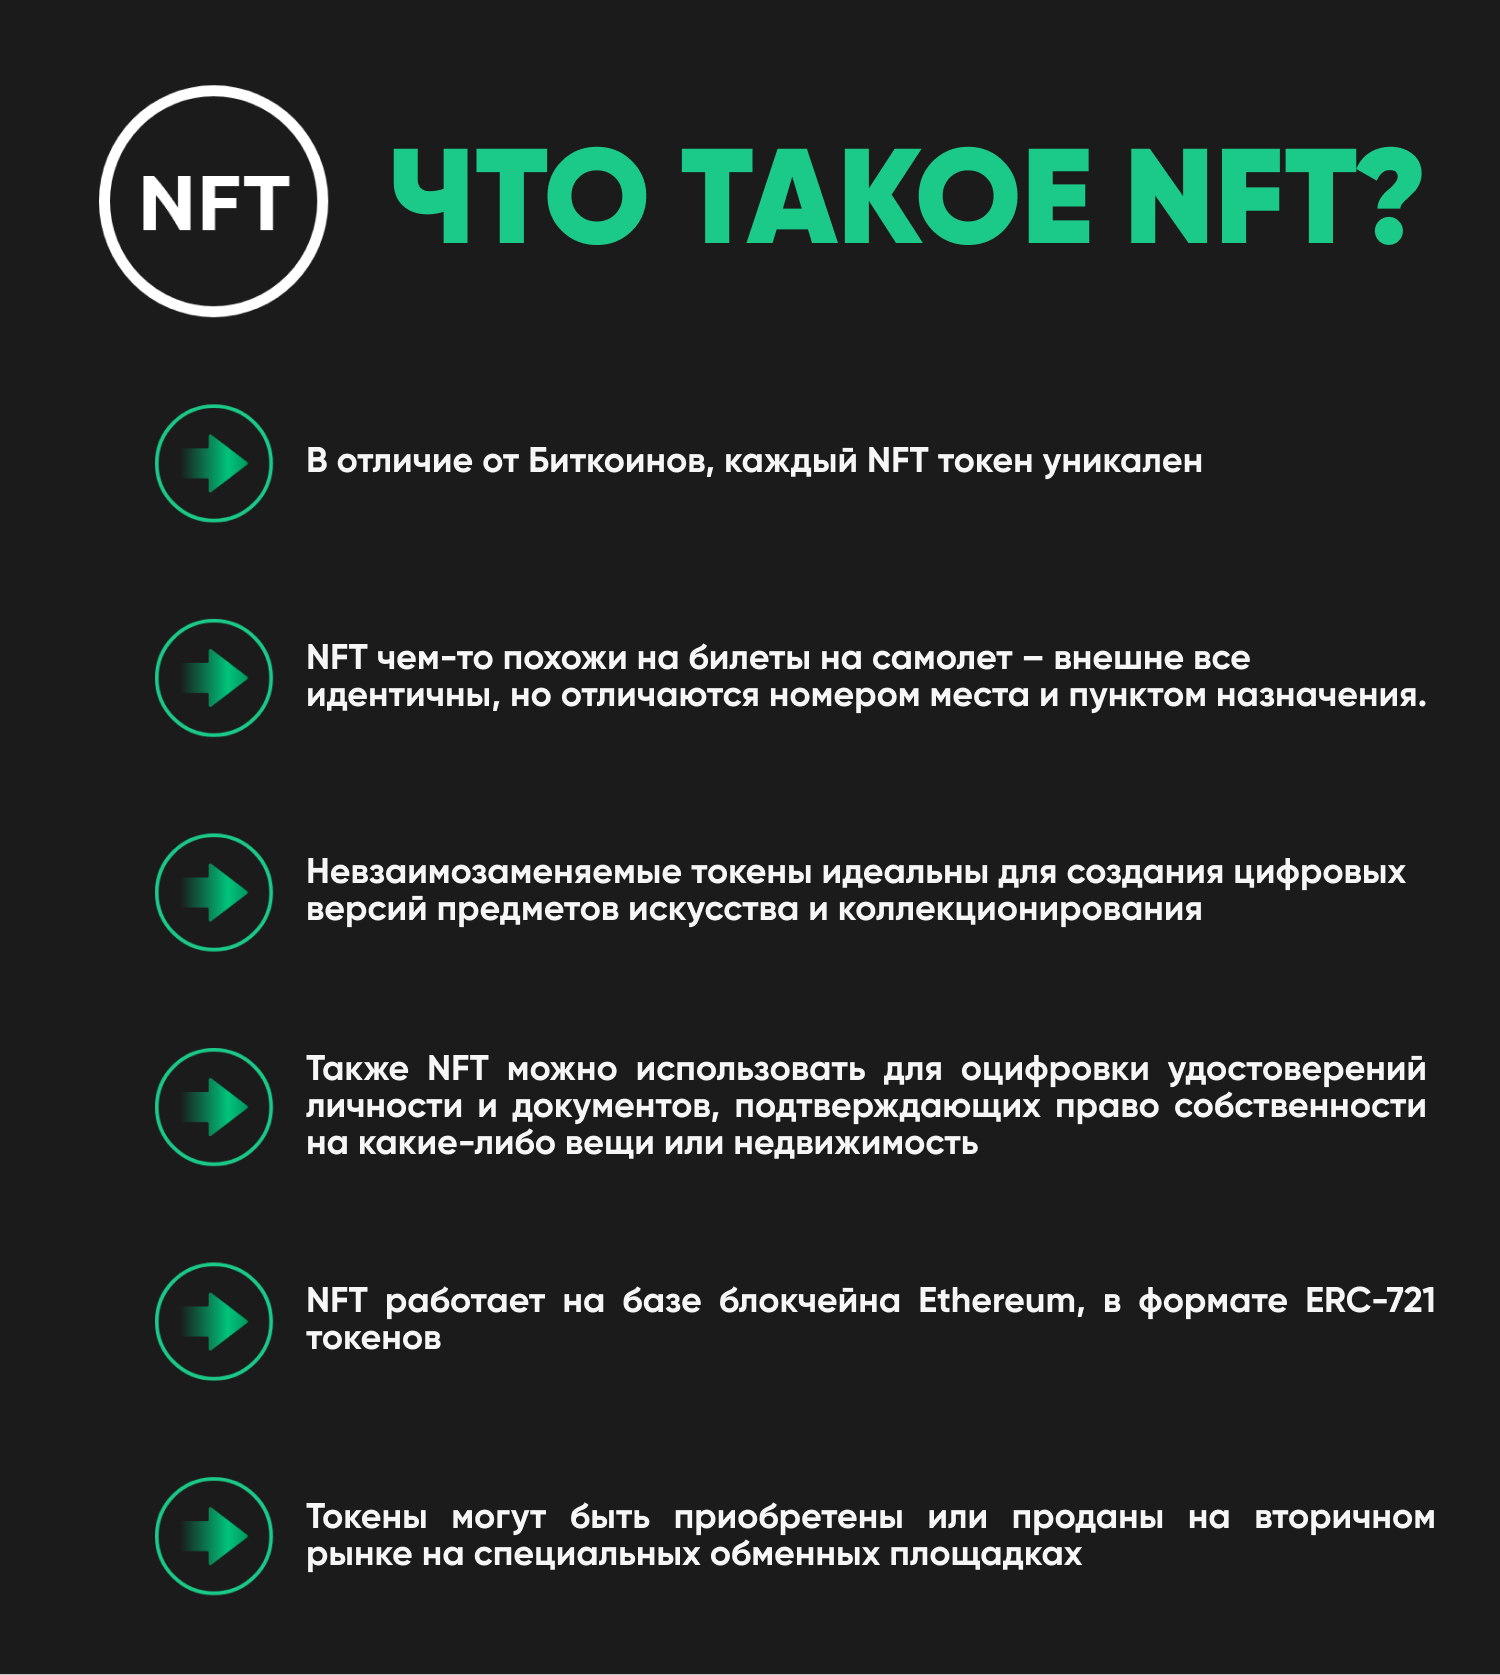 NFT токены. Невзаимозаменяемых токенов (NFT). Уникальные NFT токены. NFT token что это простыми словами. У вас 0 токенов купить токены